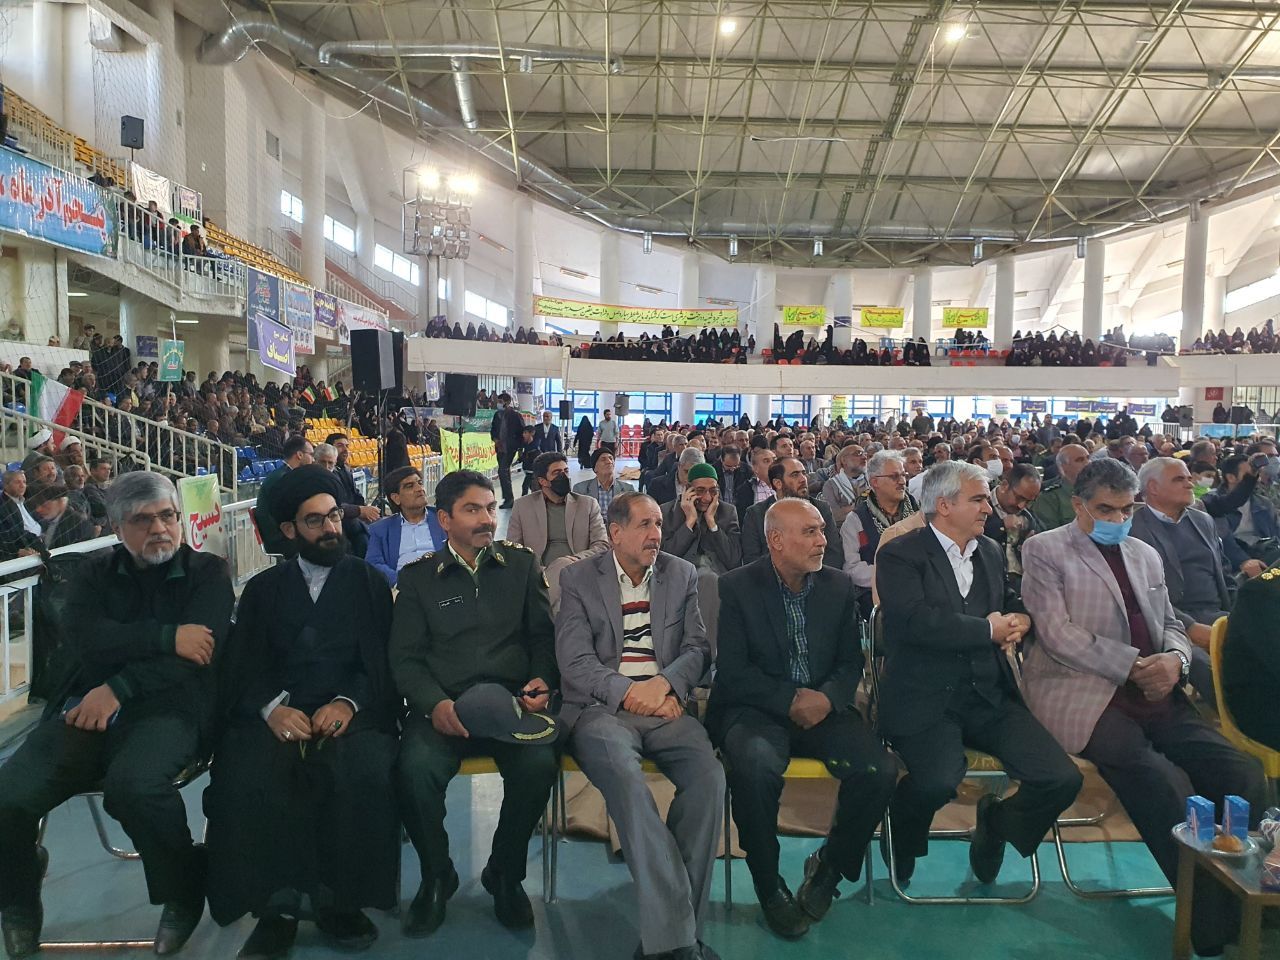 حضور شهردار و اعضای شورای اسلامی شهر در همایش بزرگ بسیجیان شهرستان نیشابور